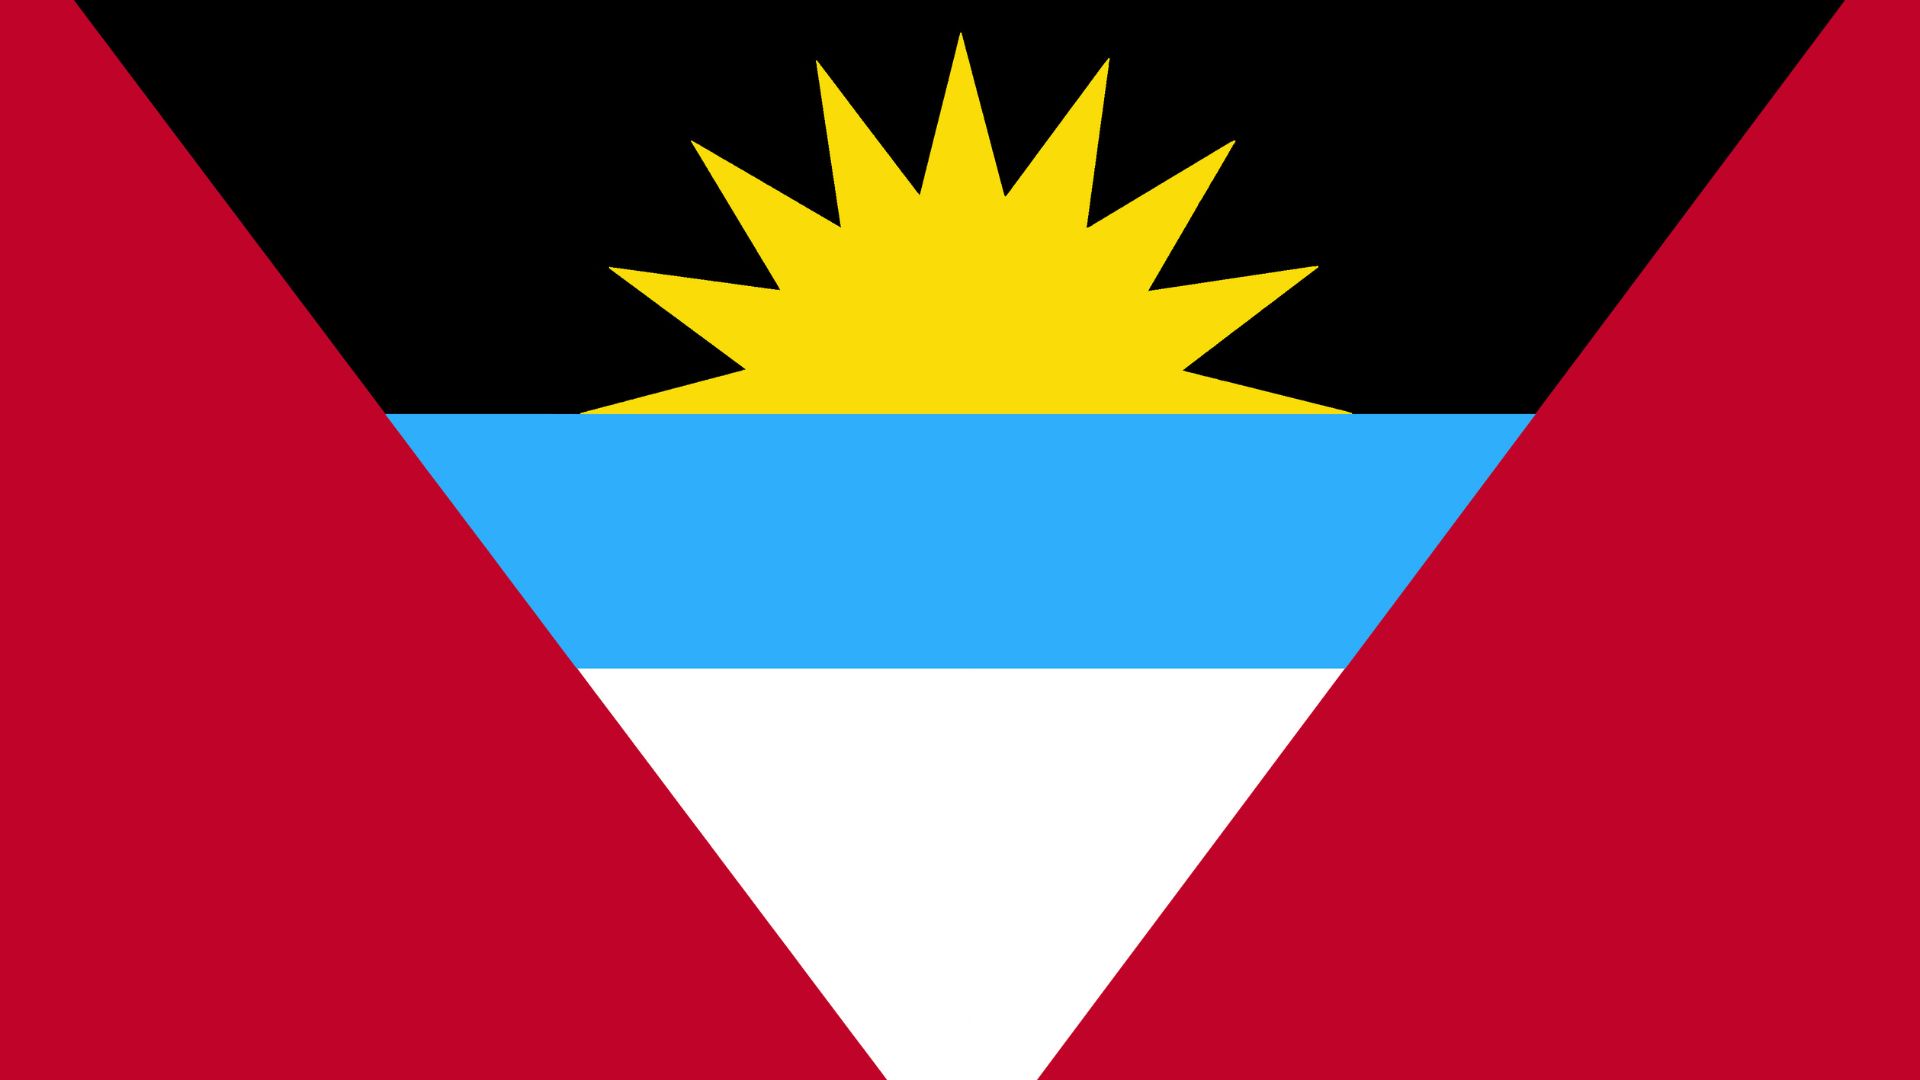 A bandeira nacional de Antigua e Barbuda traz o sol que simboliza o nascimento de uma nova era. O preto, simboliza a ancestralida de África africana do povo, o azul simboliza a esperança e o vermelho simboliza a energia.